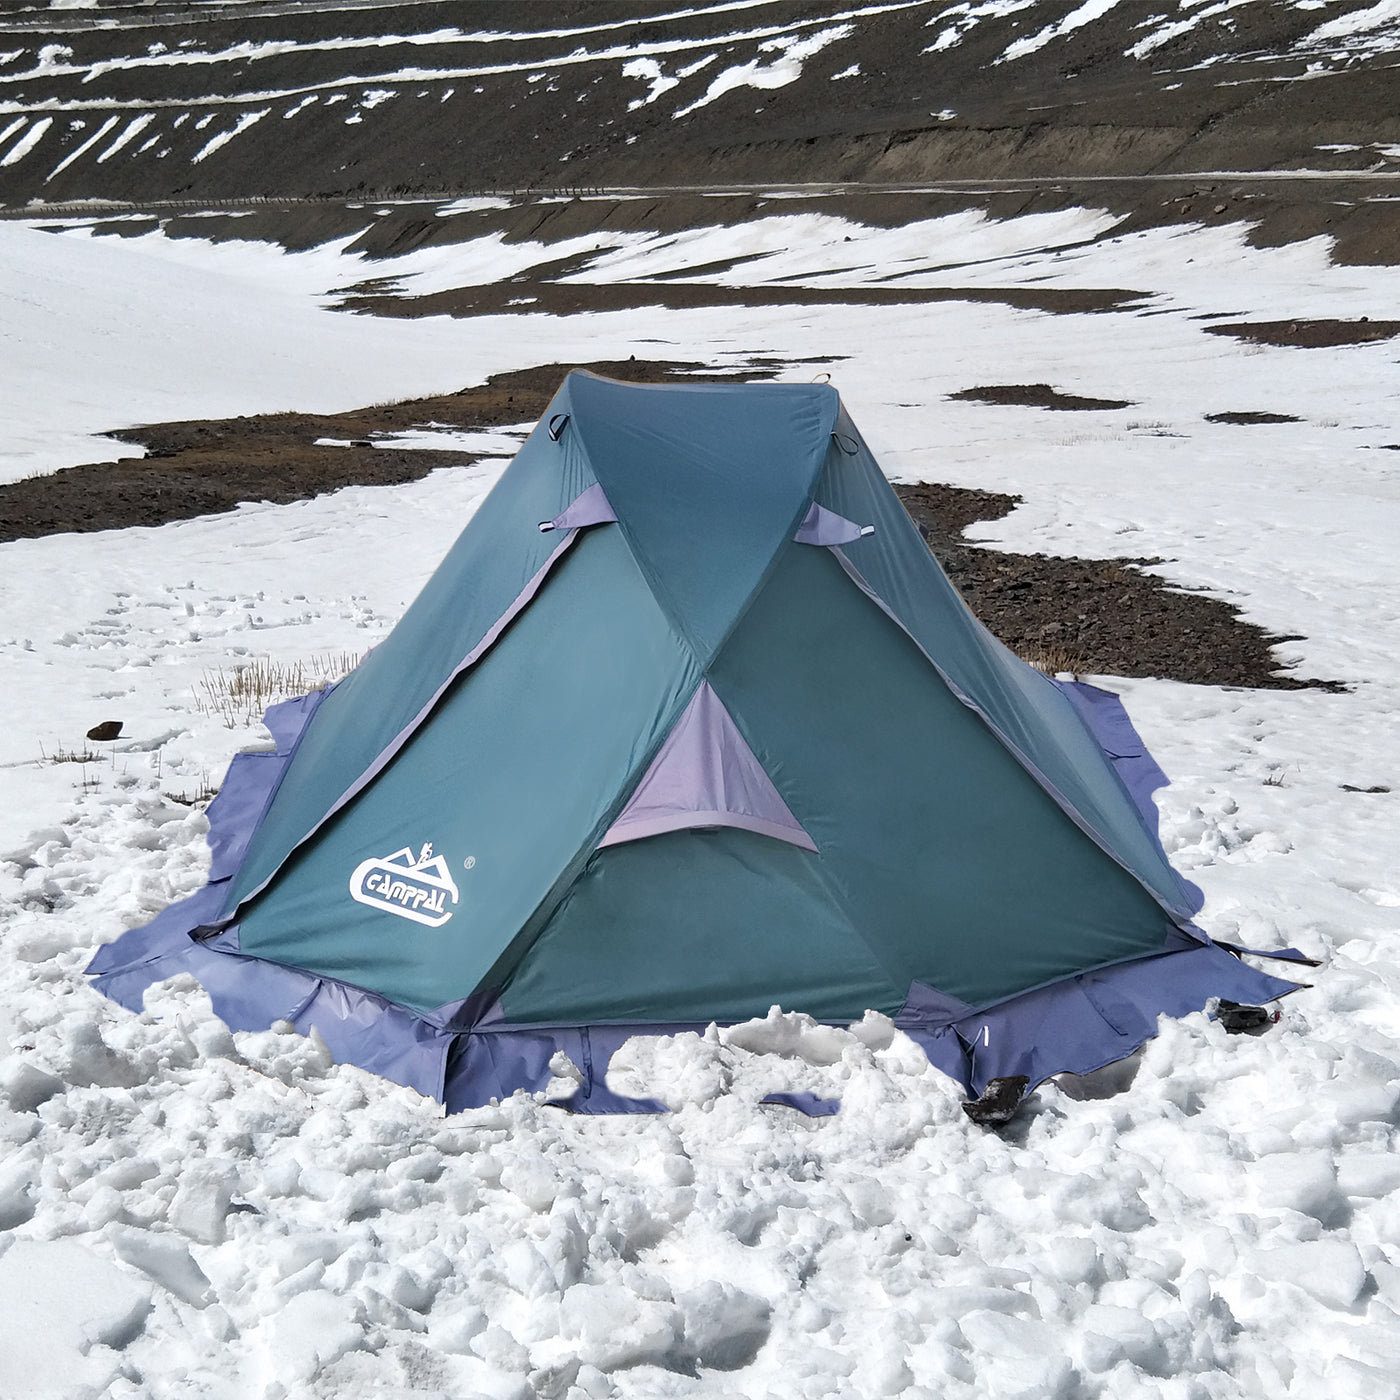 Tienda de campaña para 1 persona Mochilero Camping Senderismo Trekking Caza  Tienda de montaña Super Ligero e impermeable y resistente al viento 4